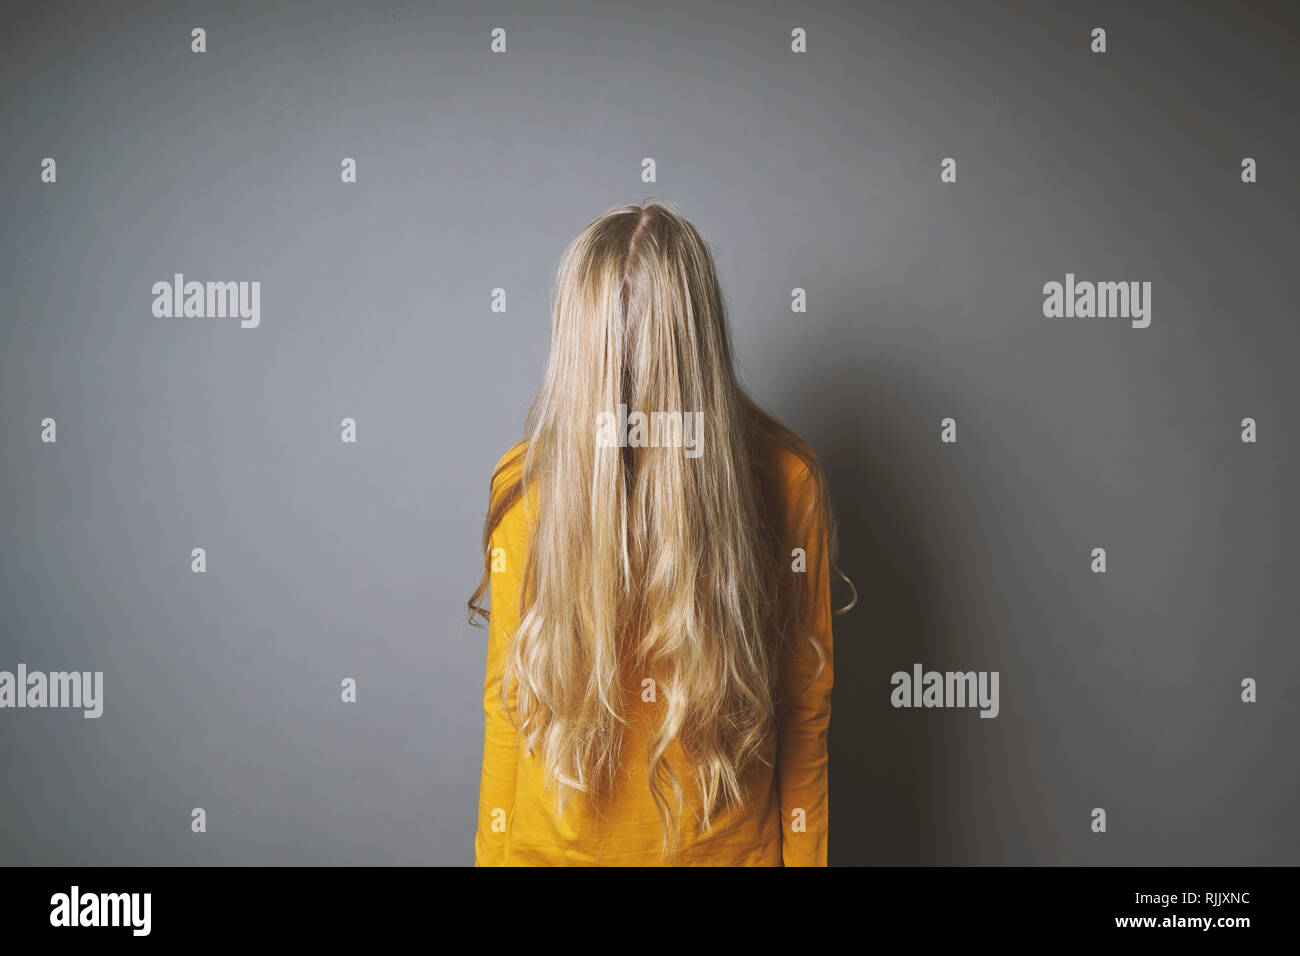 Deprimiert junge Frau ihr Gesicht verstecken hinter langen blonden Haare Stockfoto